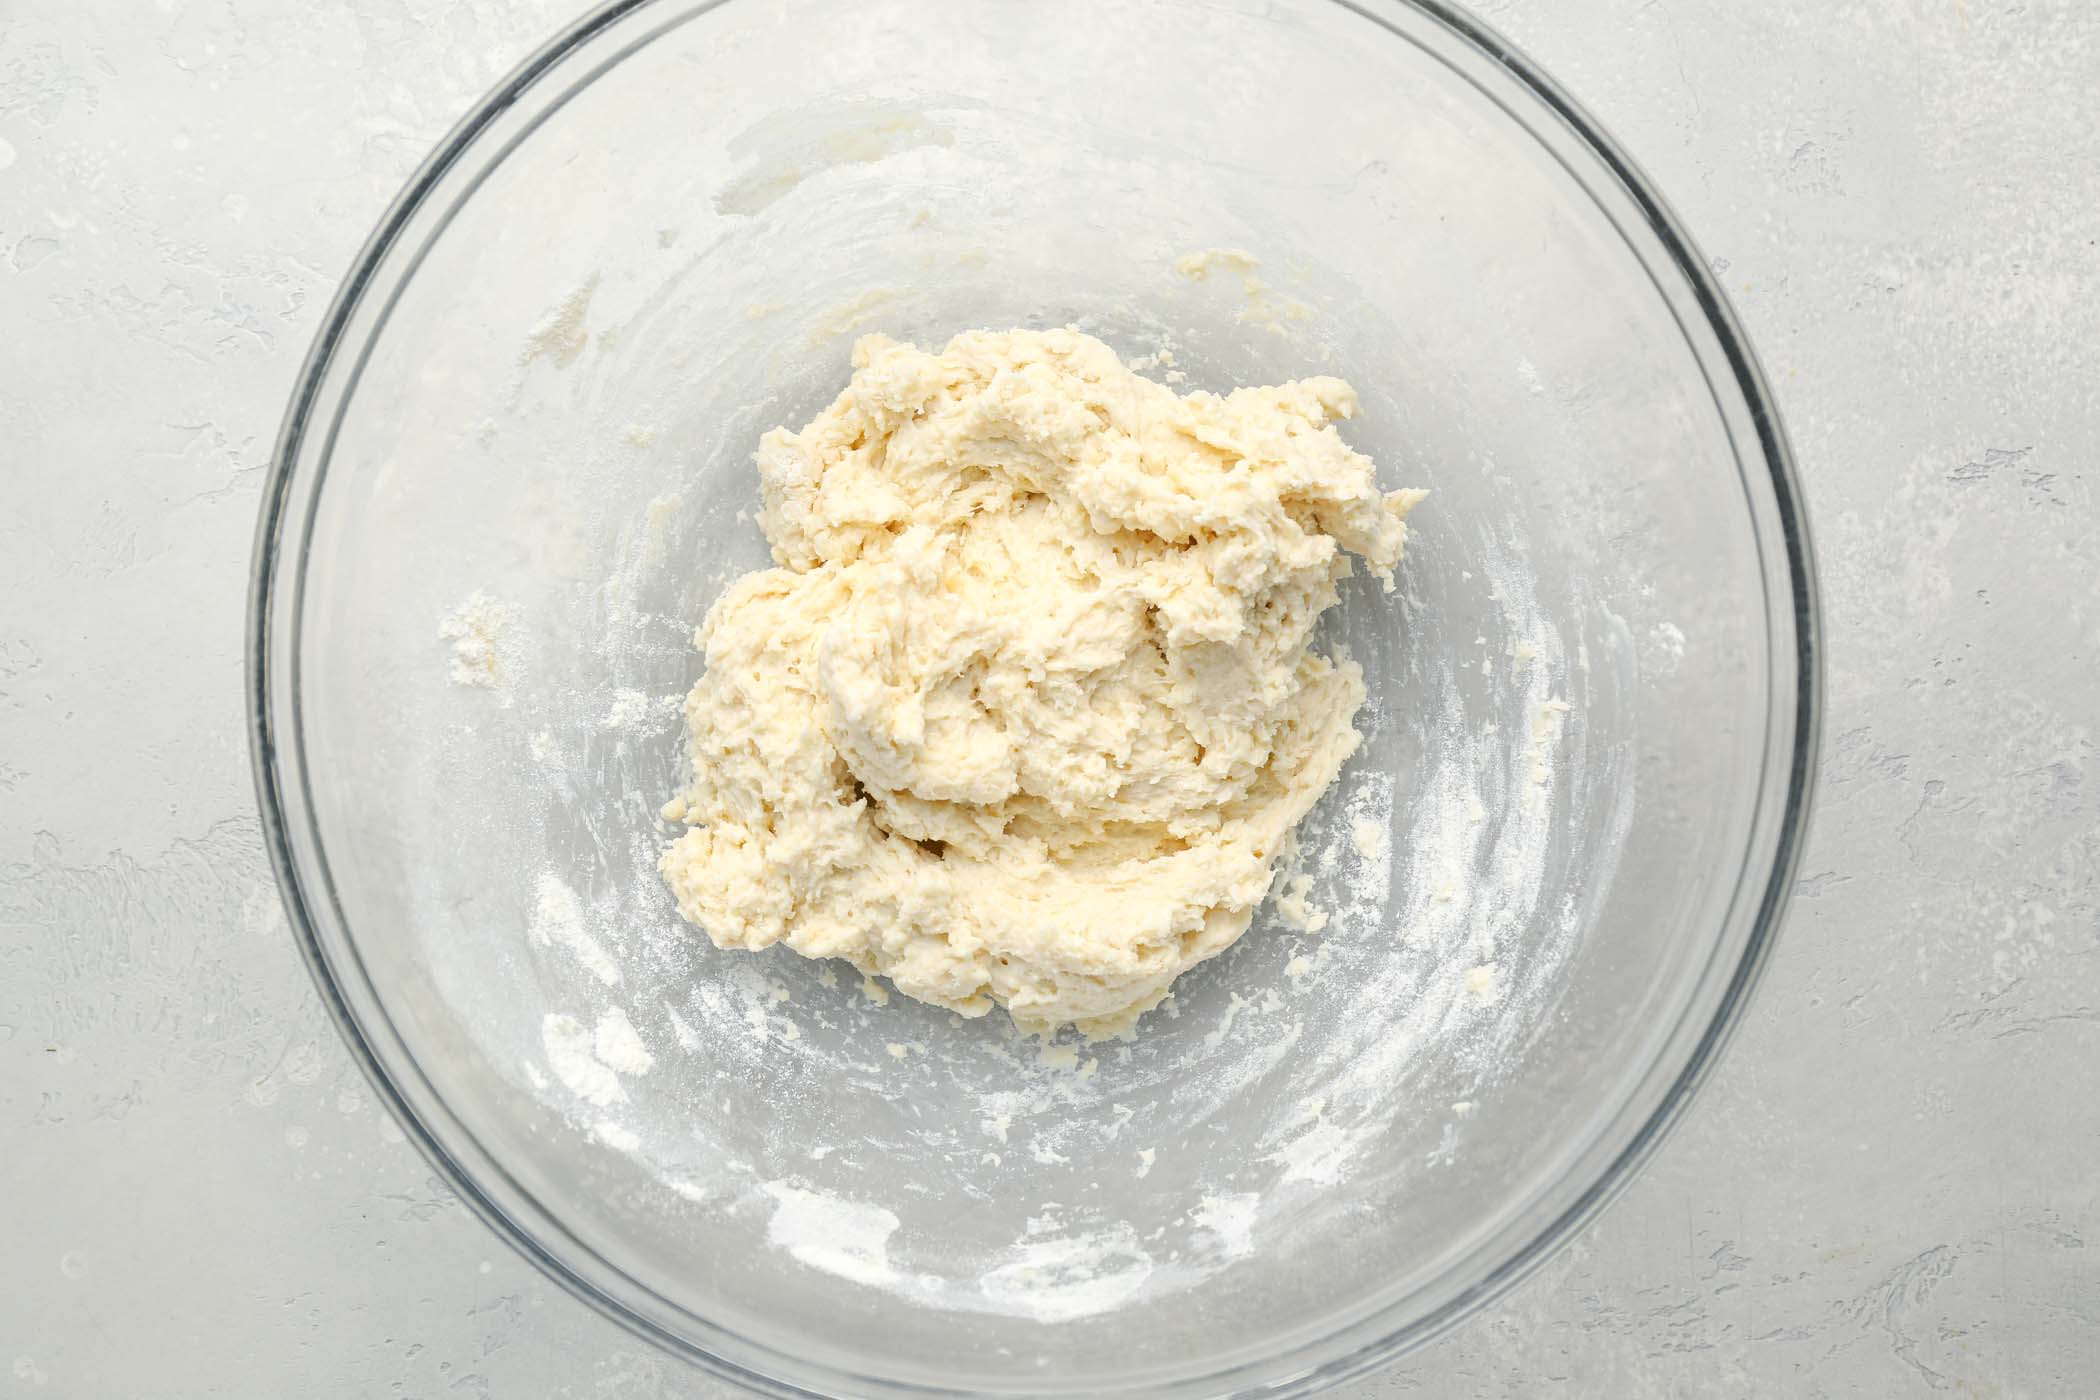 Dumpling dough in a glass mixing bowl.